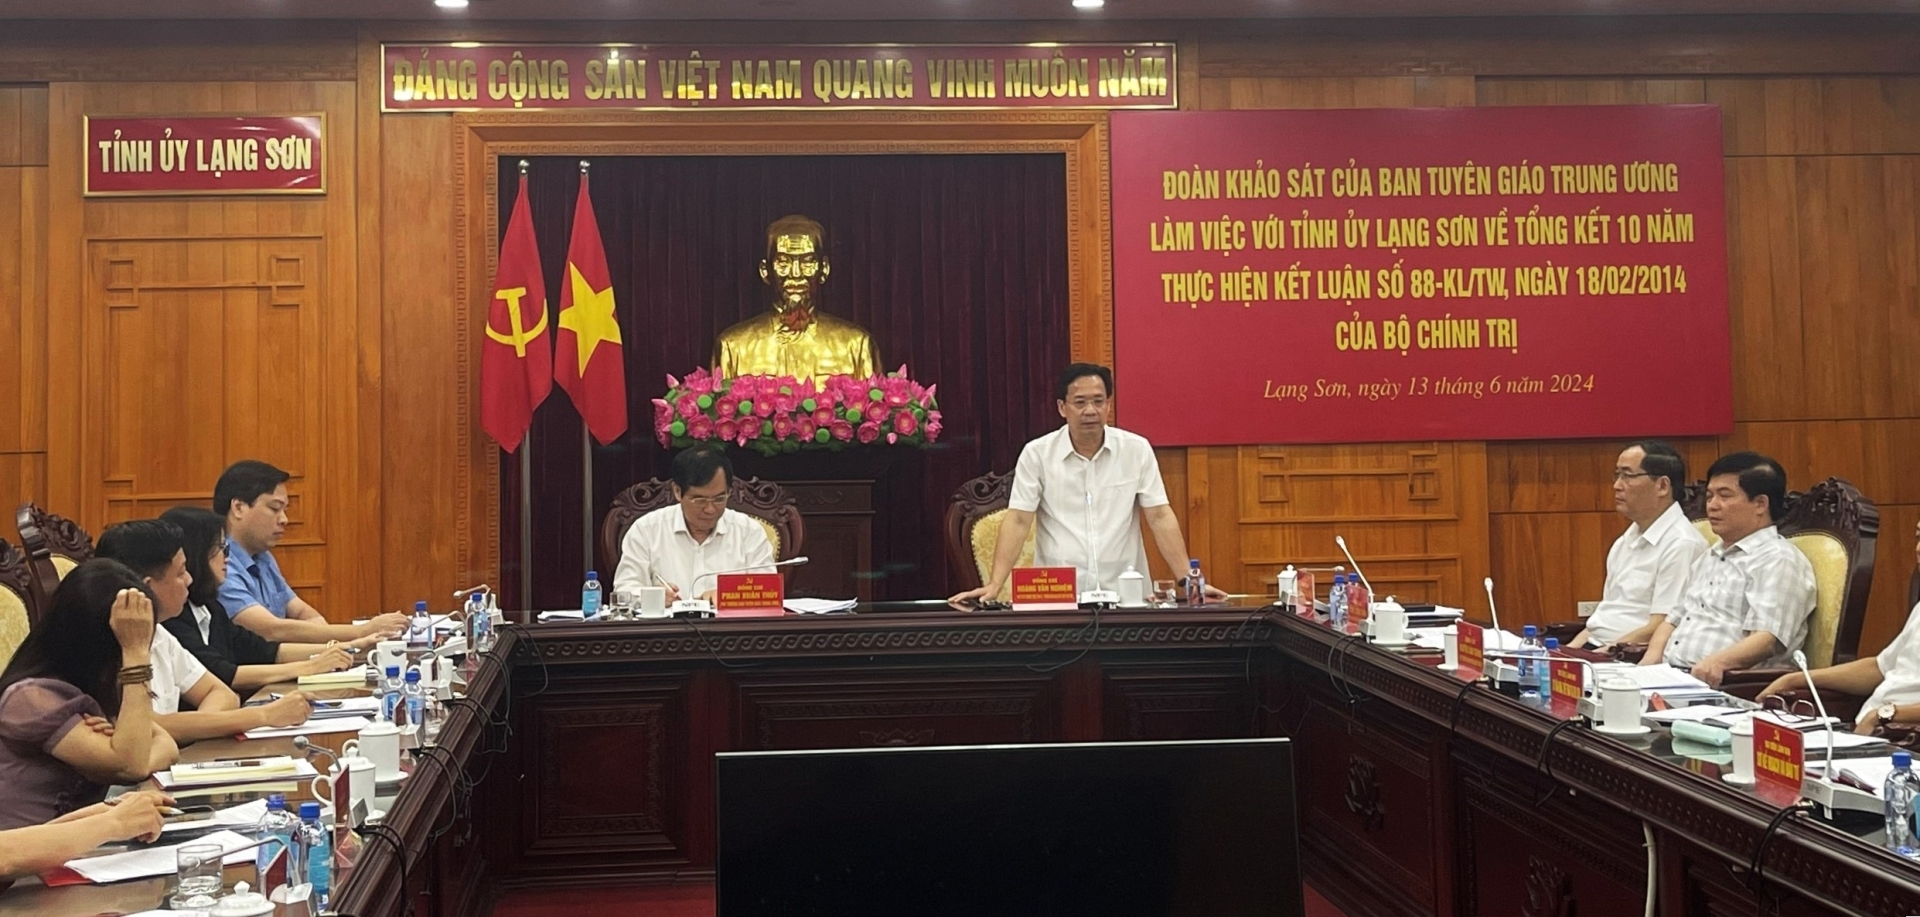 Đồng chí Hoàng Văn Nghiệm, Phó Bí thư Thường trực Tỉnh ủy Lạng Sơn, Trưởng Đoàn Đại biểu Quốc hội tỉnh Lạng Sơn phát biểu tại buổi làm việc.